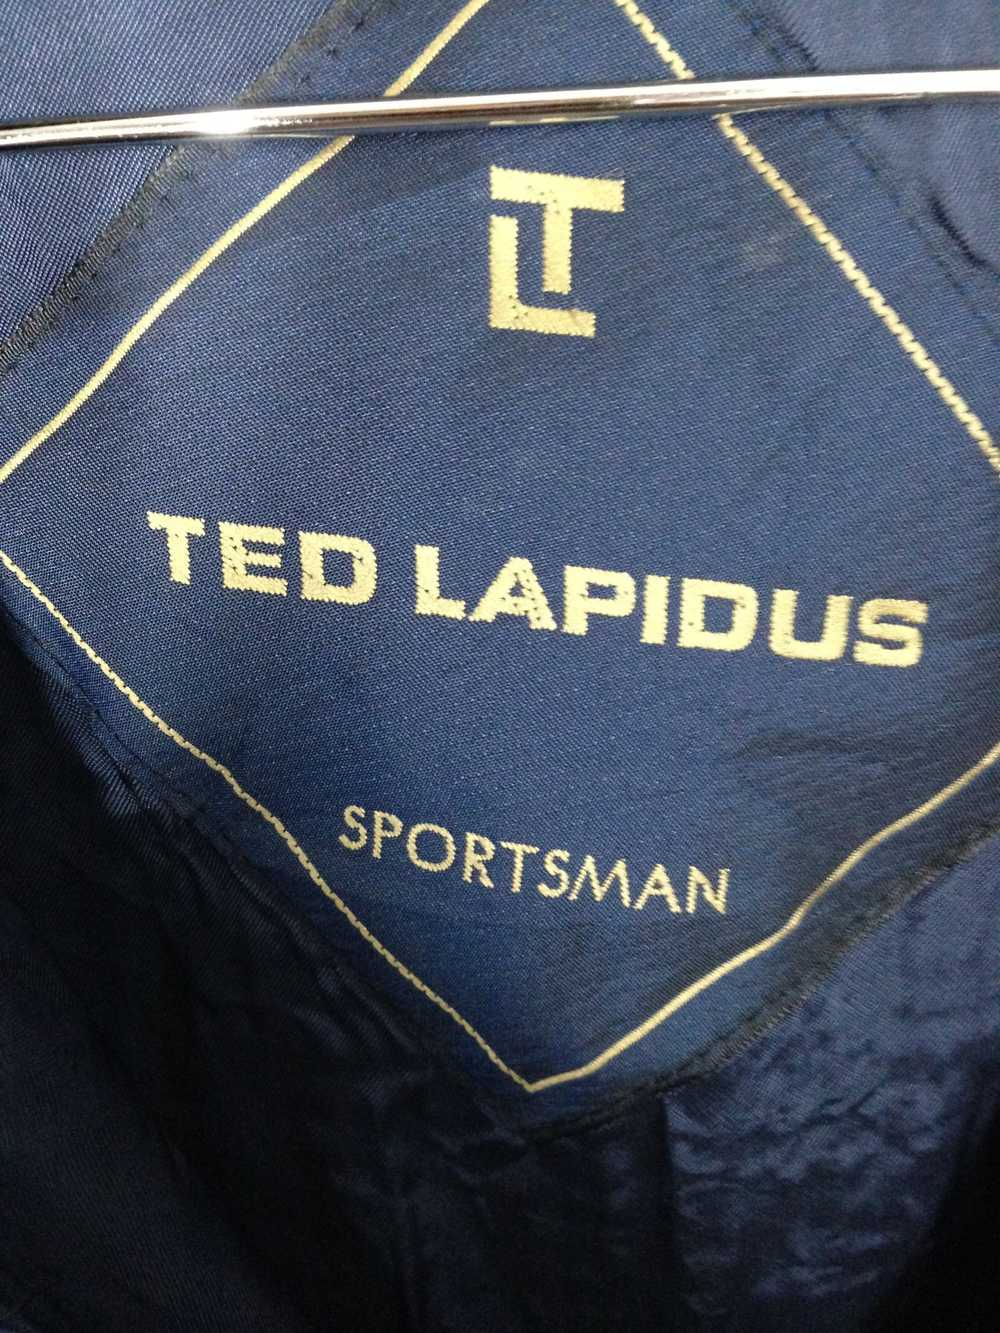 Ted Lapidus Vintage Ted Lapidus Sportsman Jacket - image 3